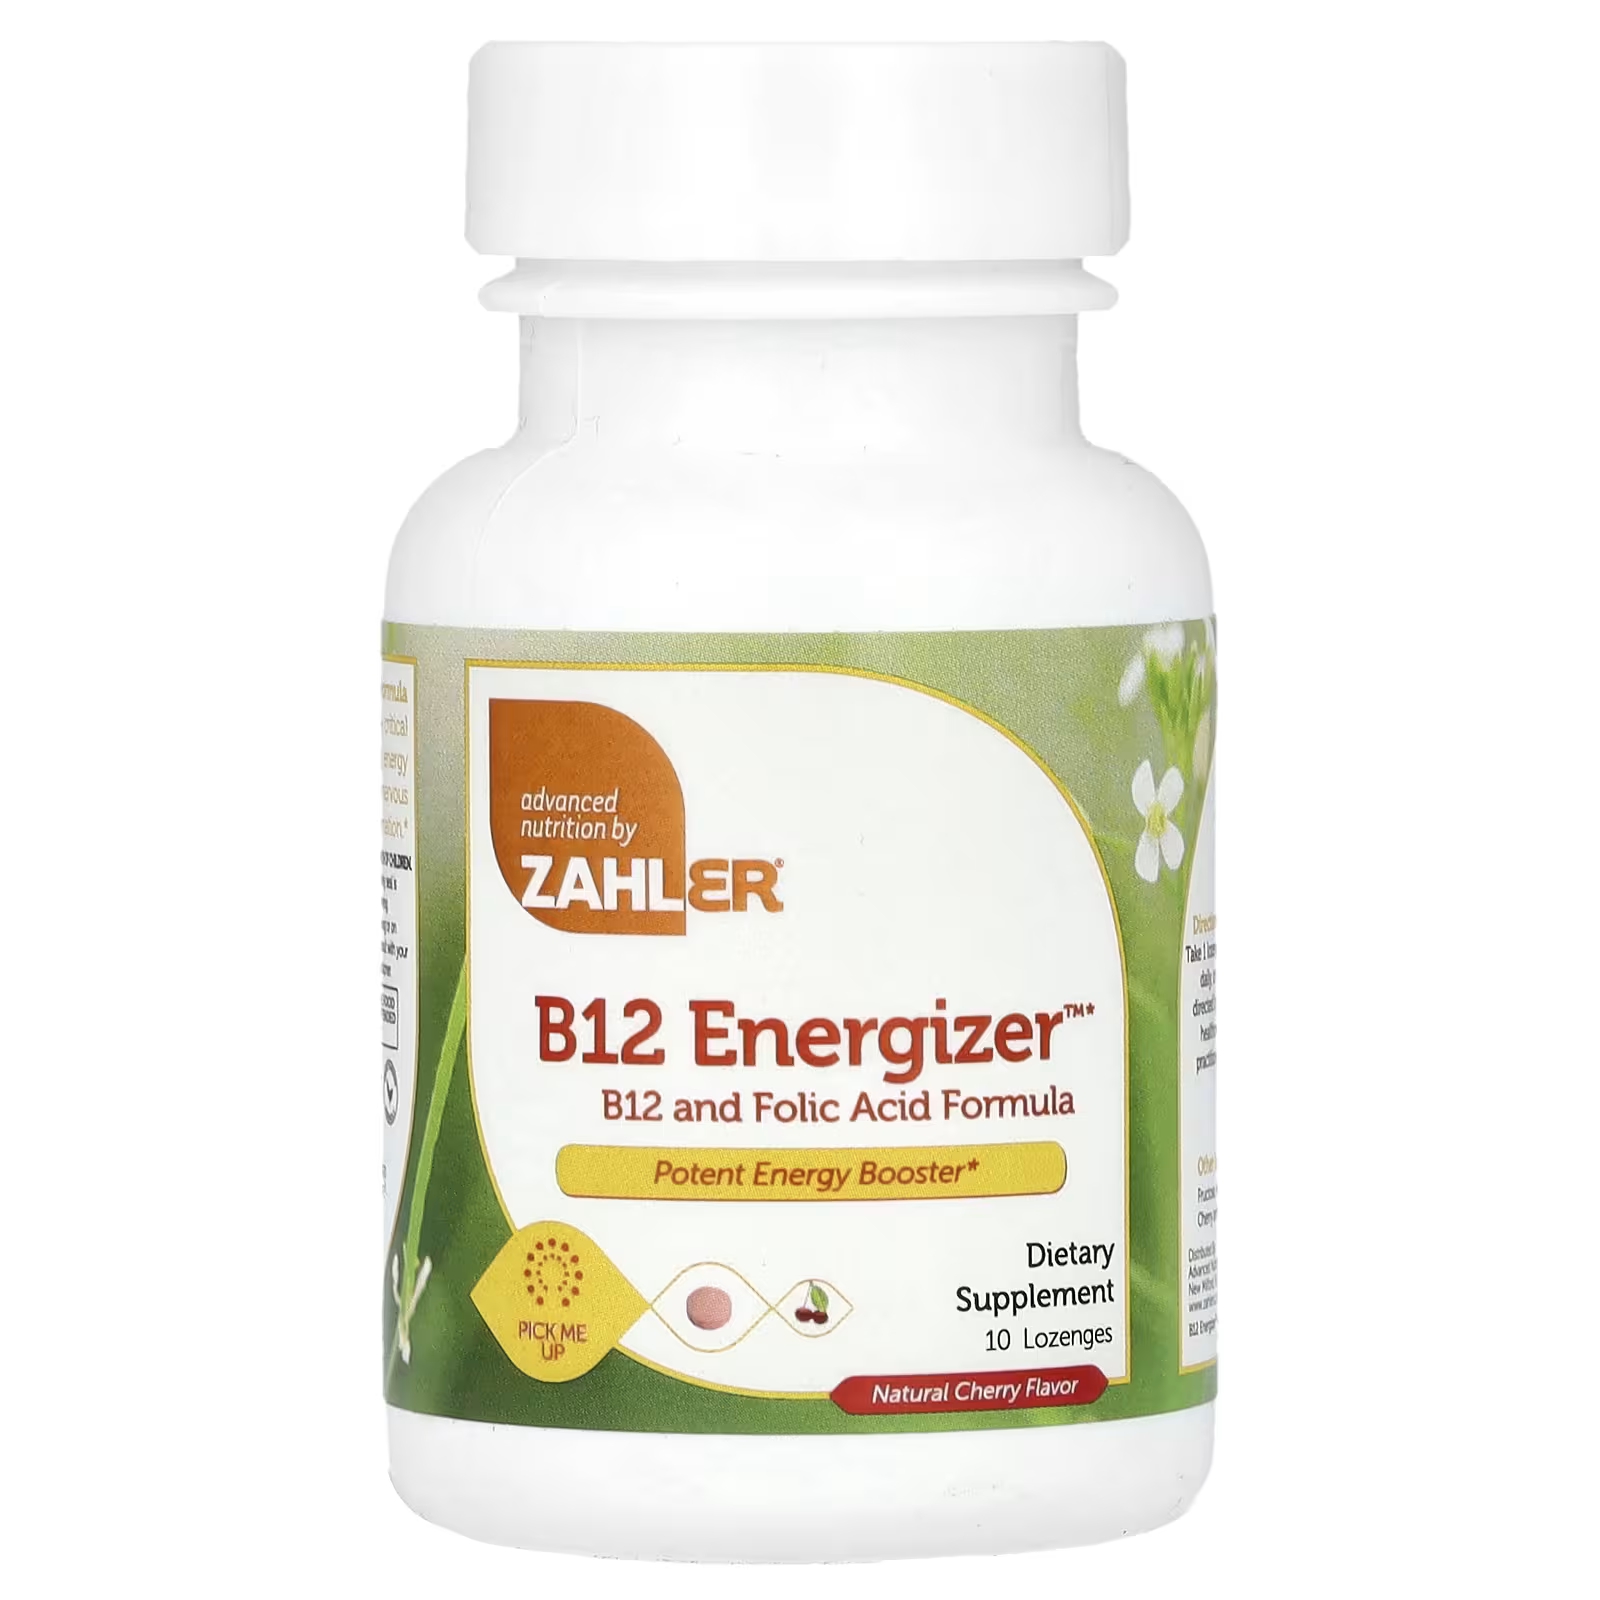 Пищевая добавка Zahler B12 Energizer натуральная вишня, 10 пастилок активированный комплекс b12 swanson натуральная вишня 60 пастилок